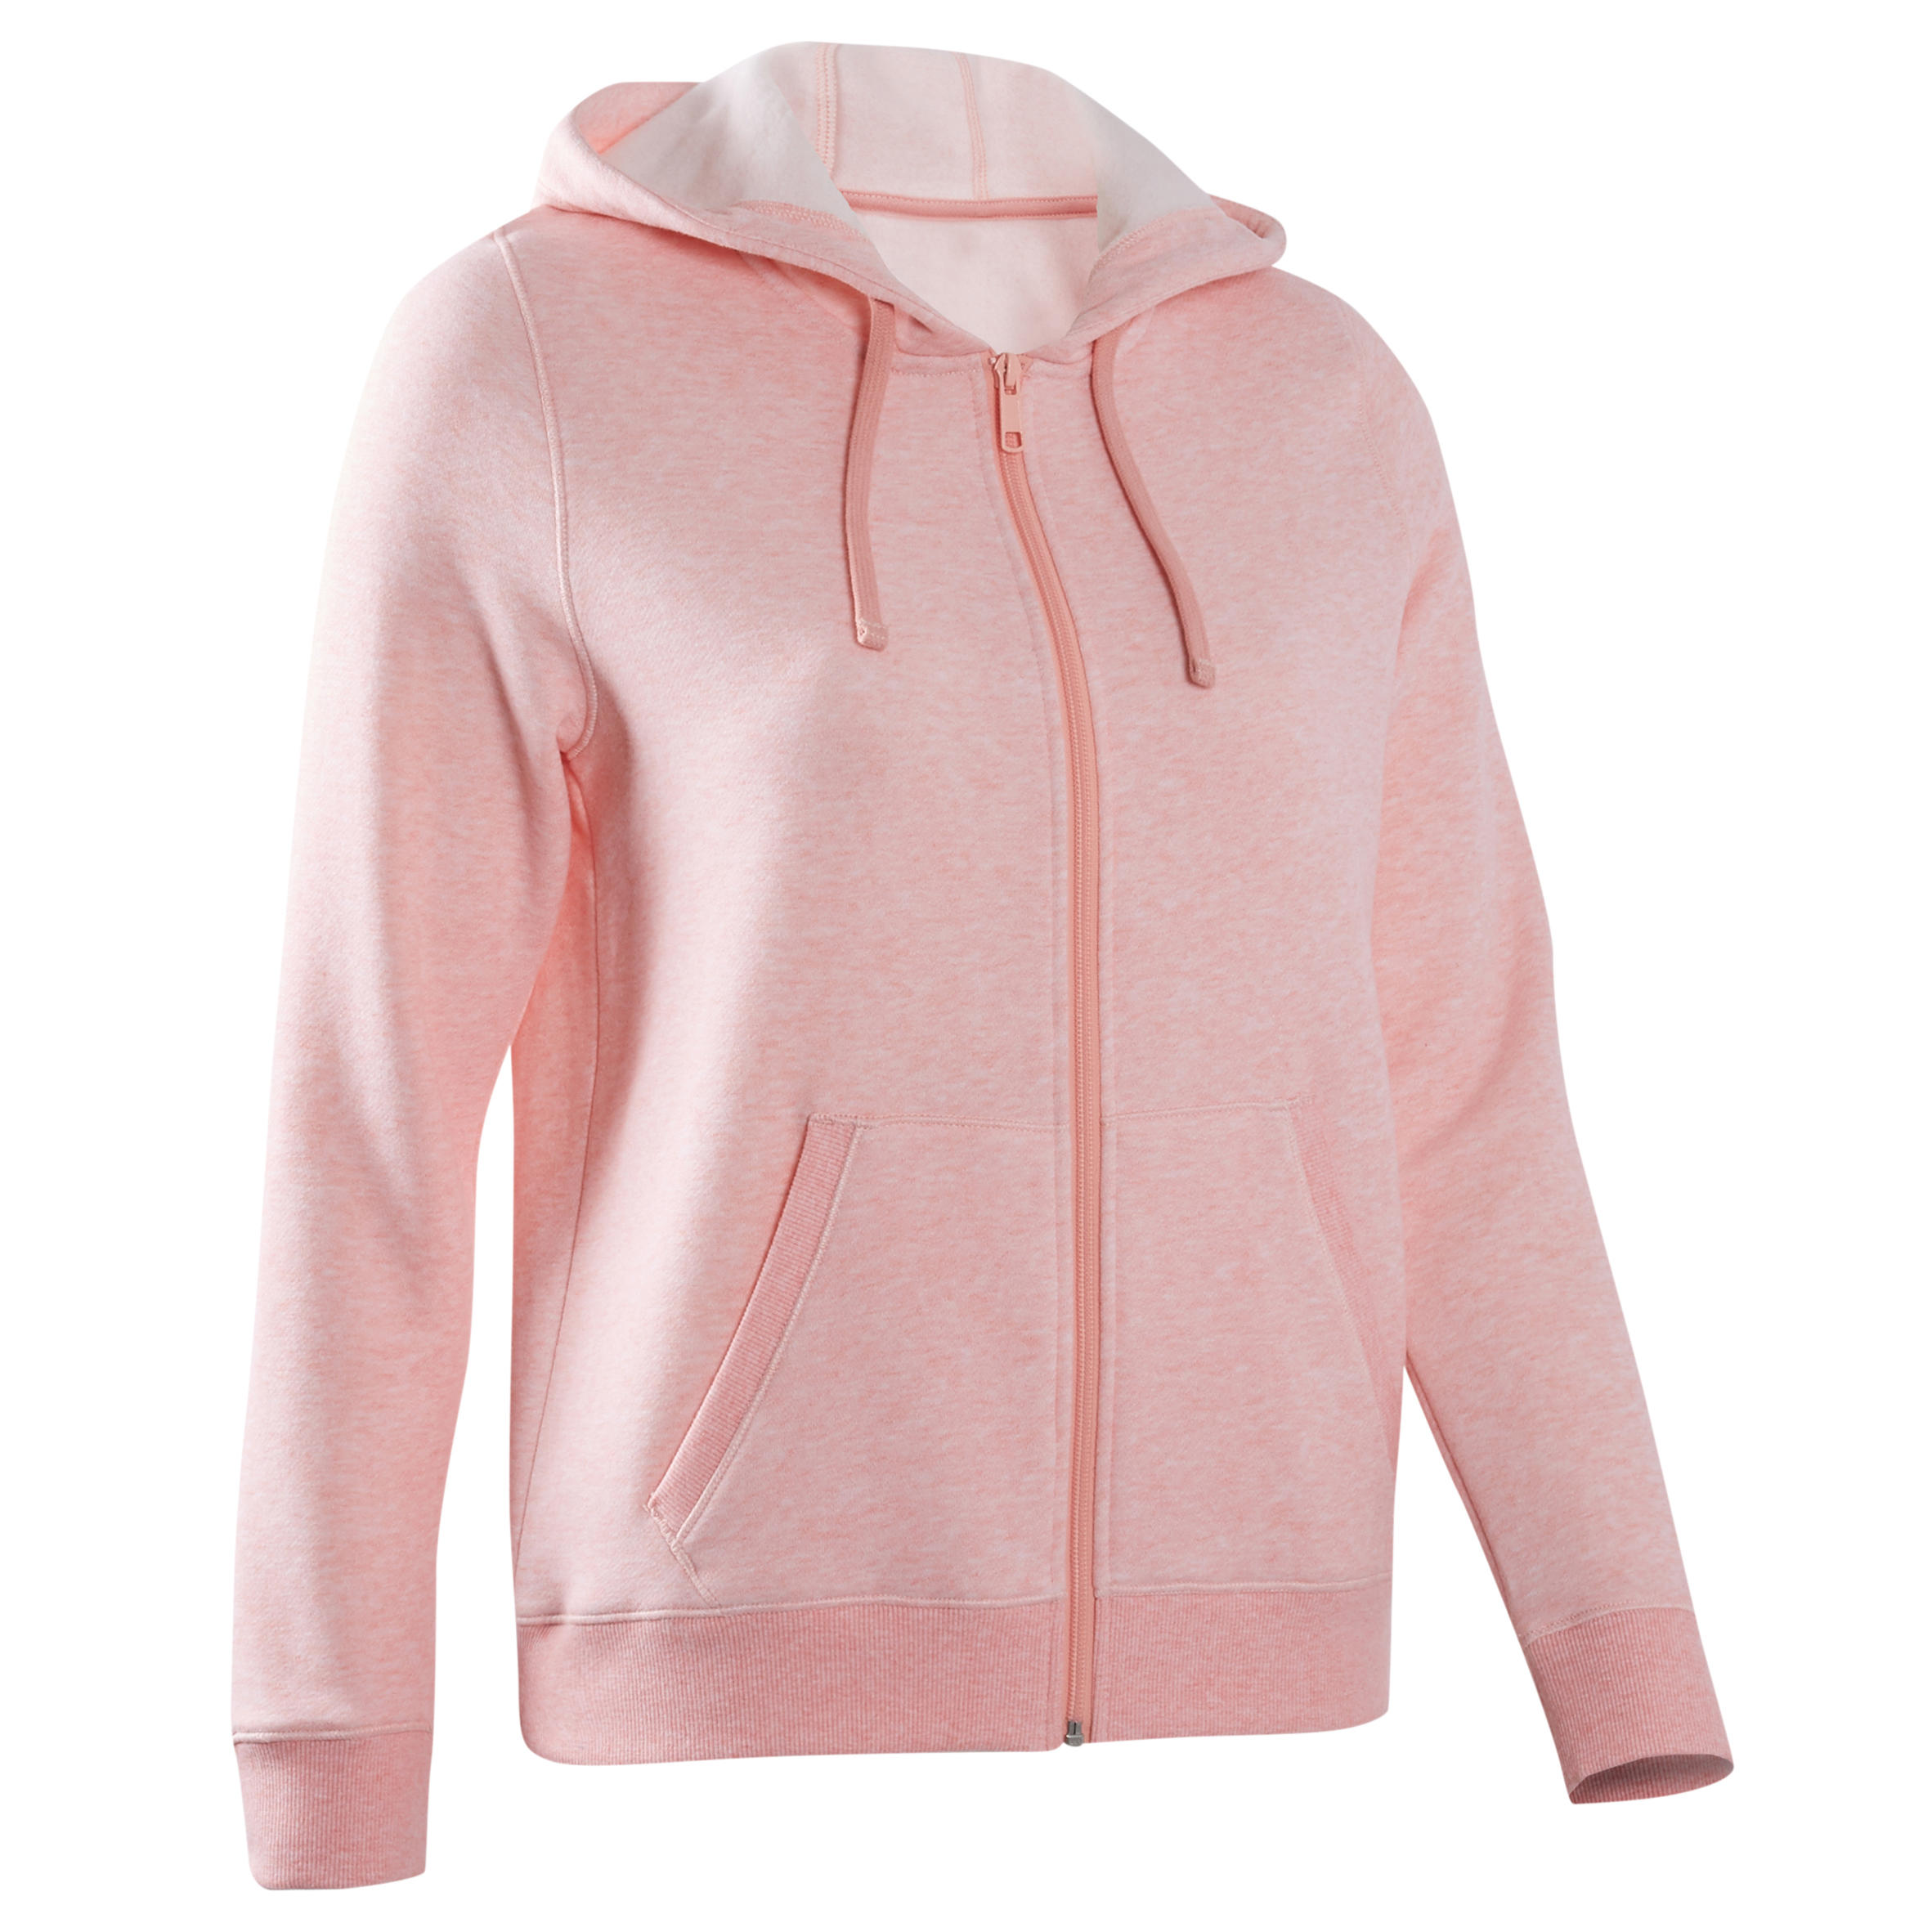 Women's Gym Jacket Hoodie 500 - Pink